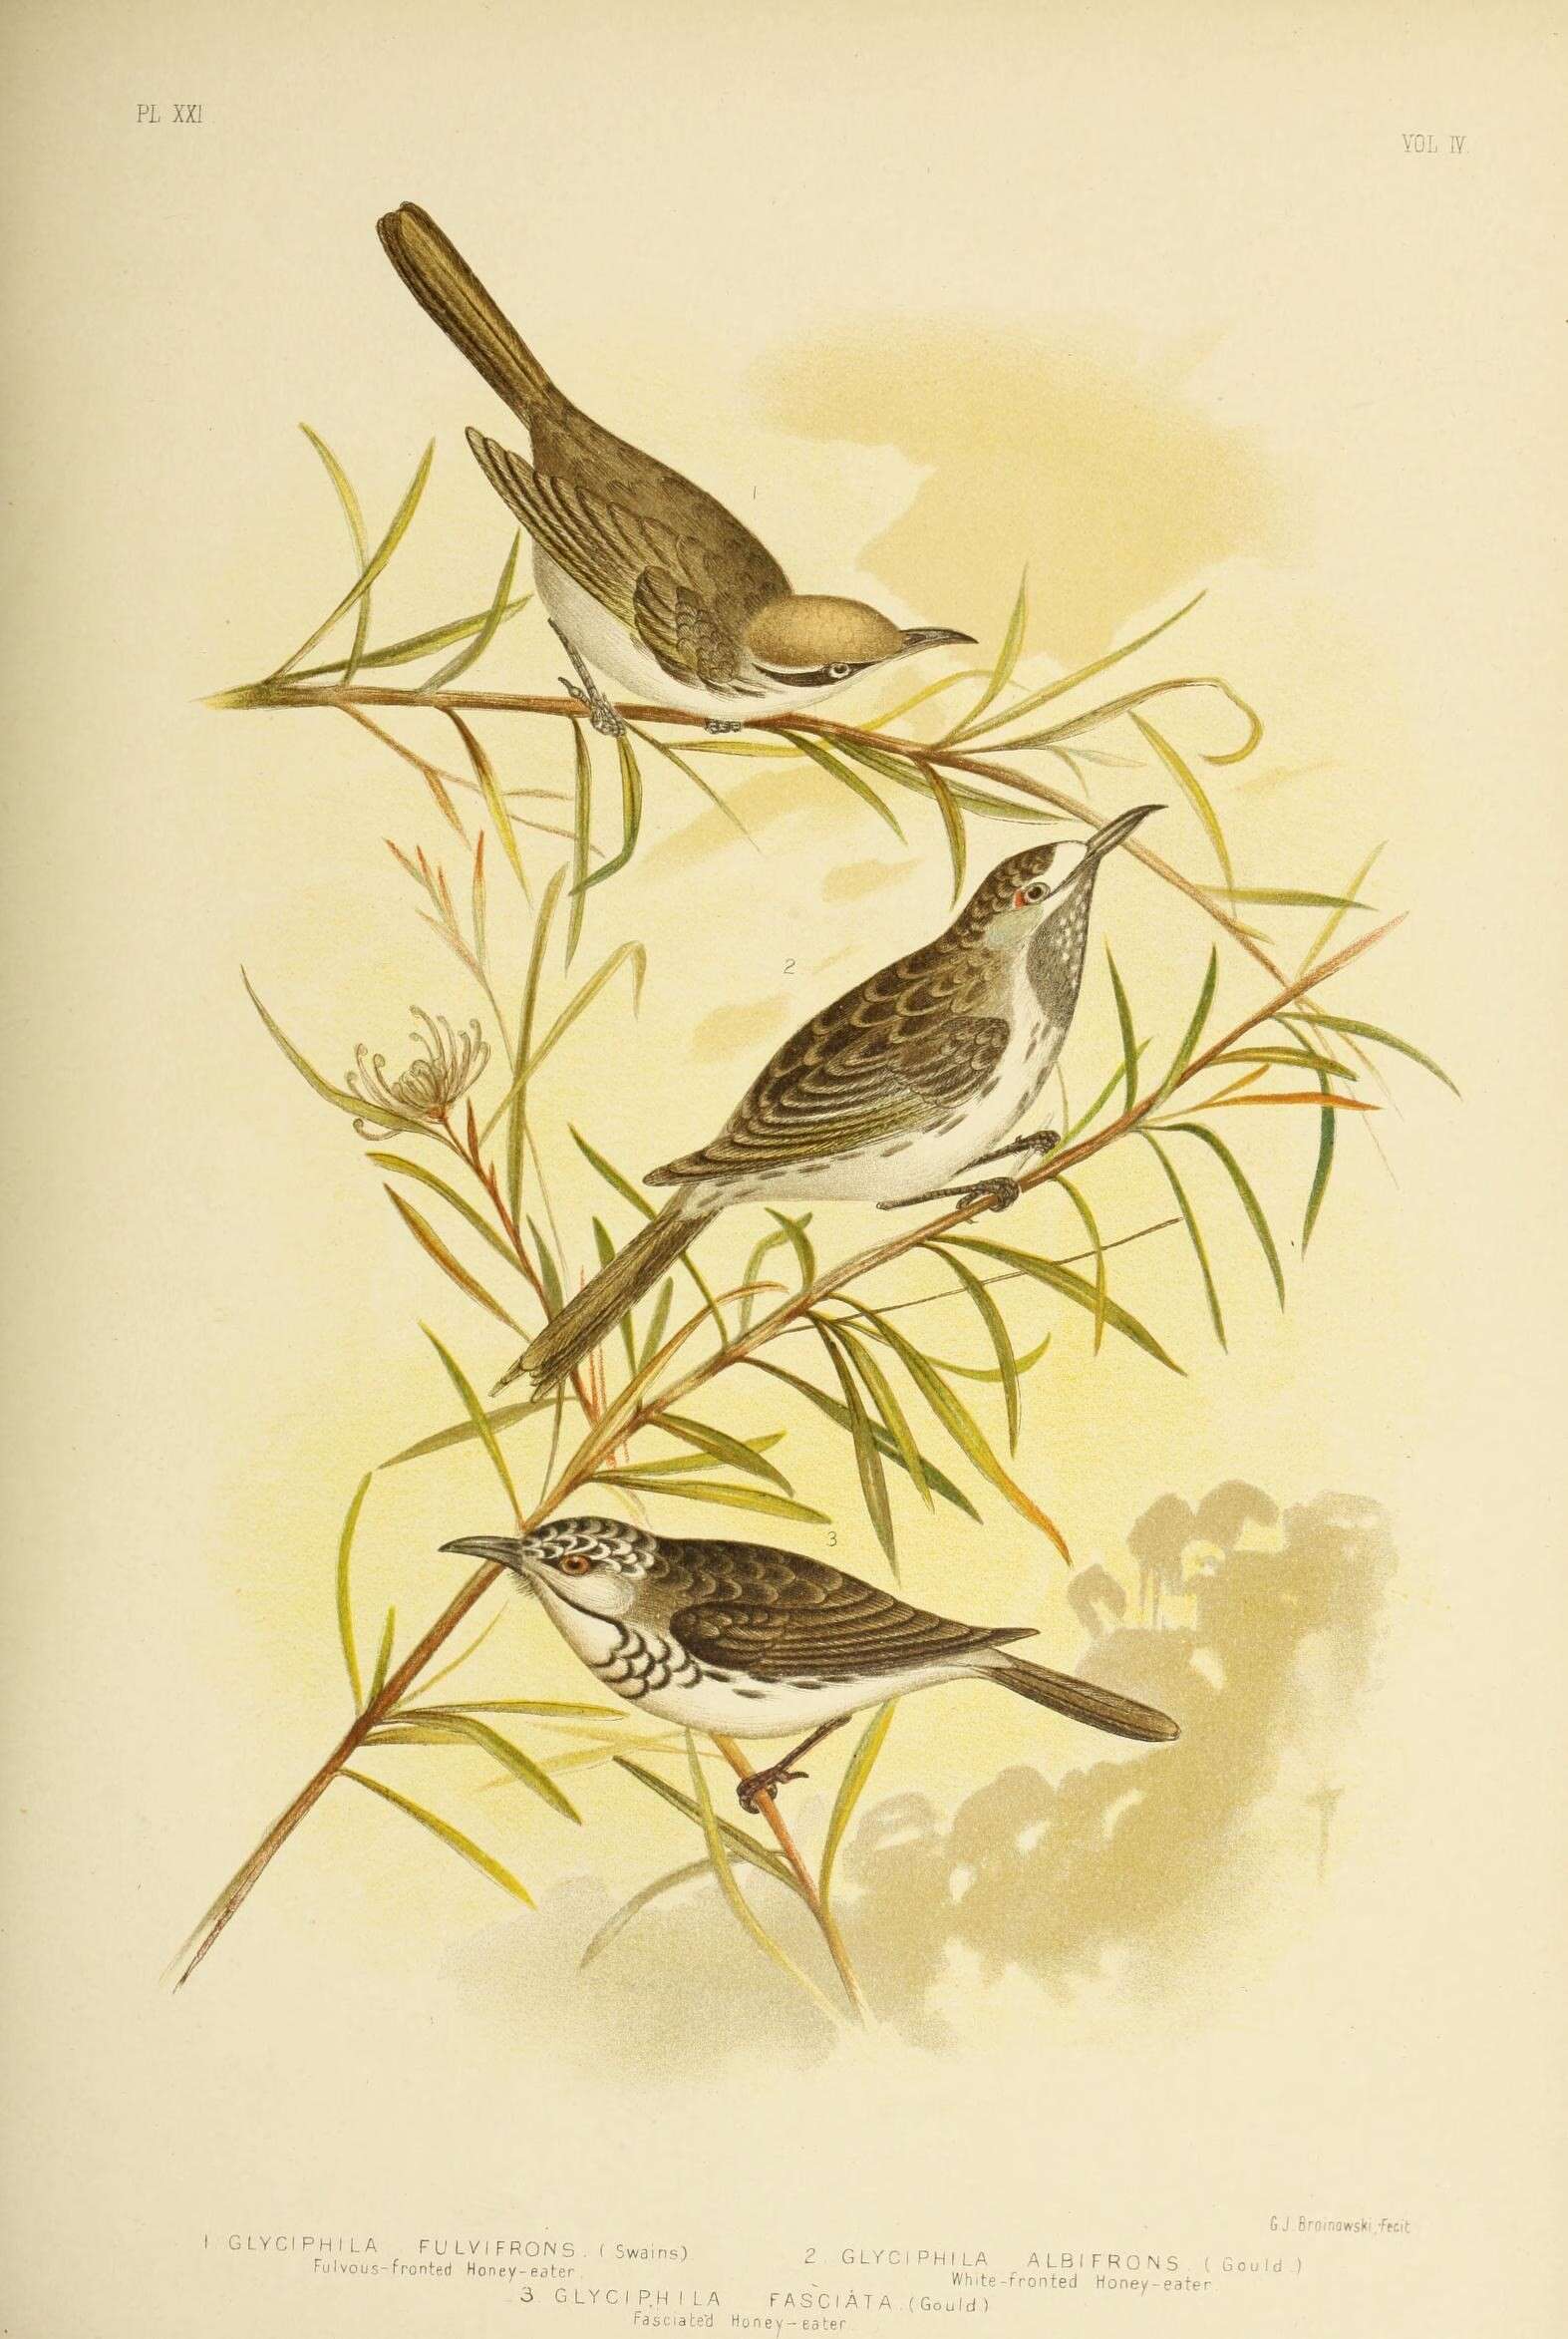 Image of Gliciphila Swainson 1837